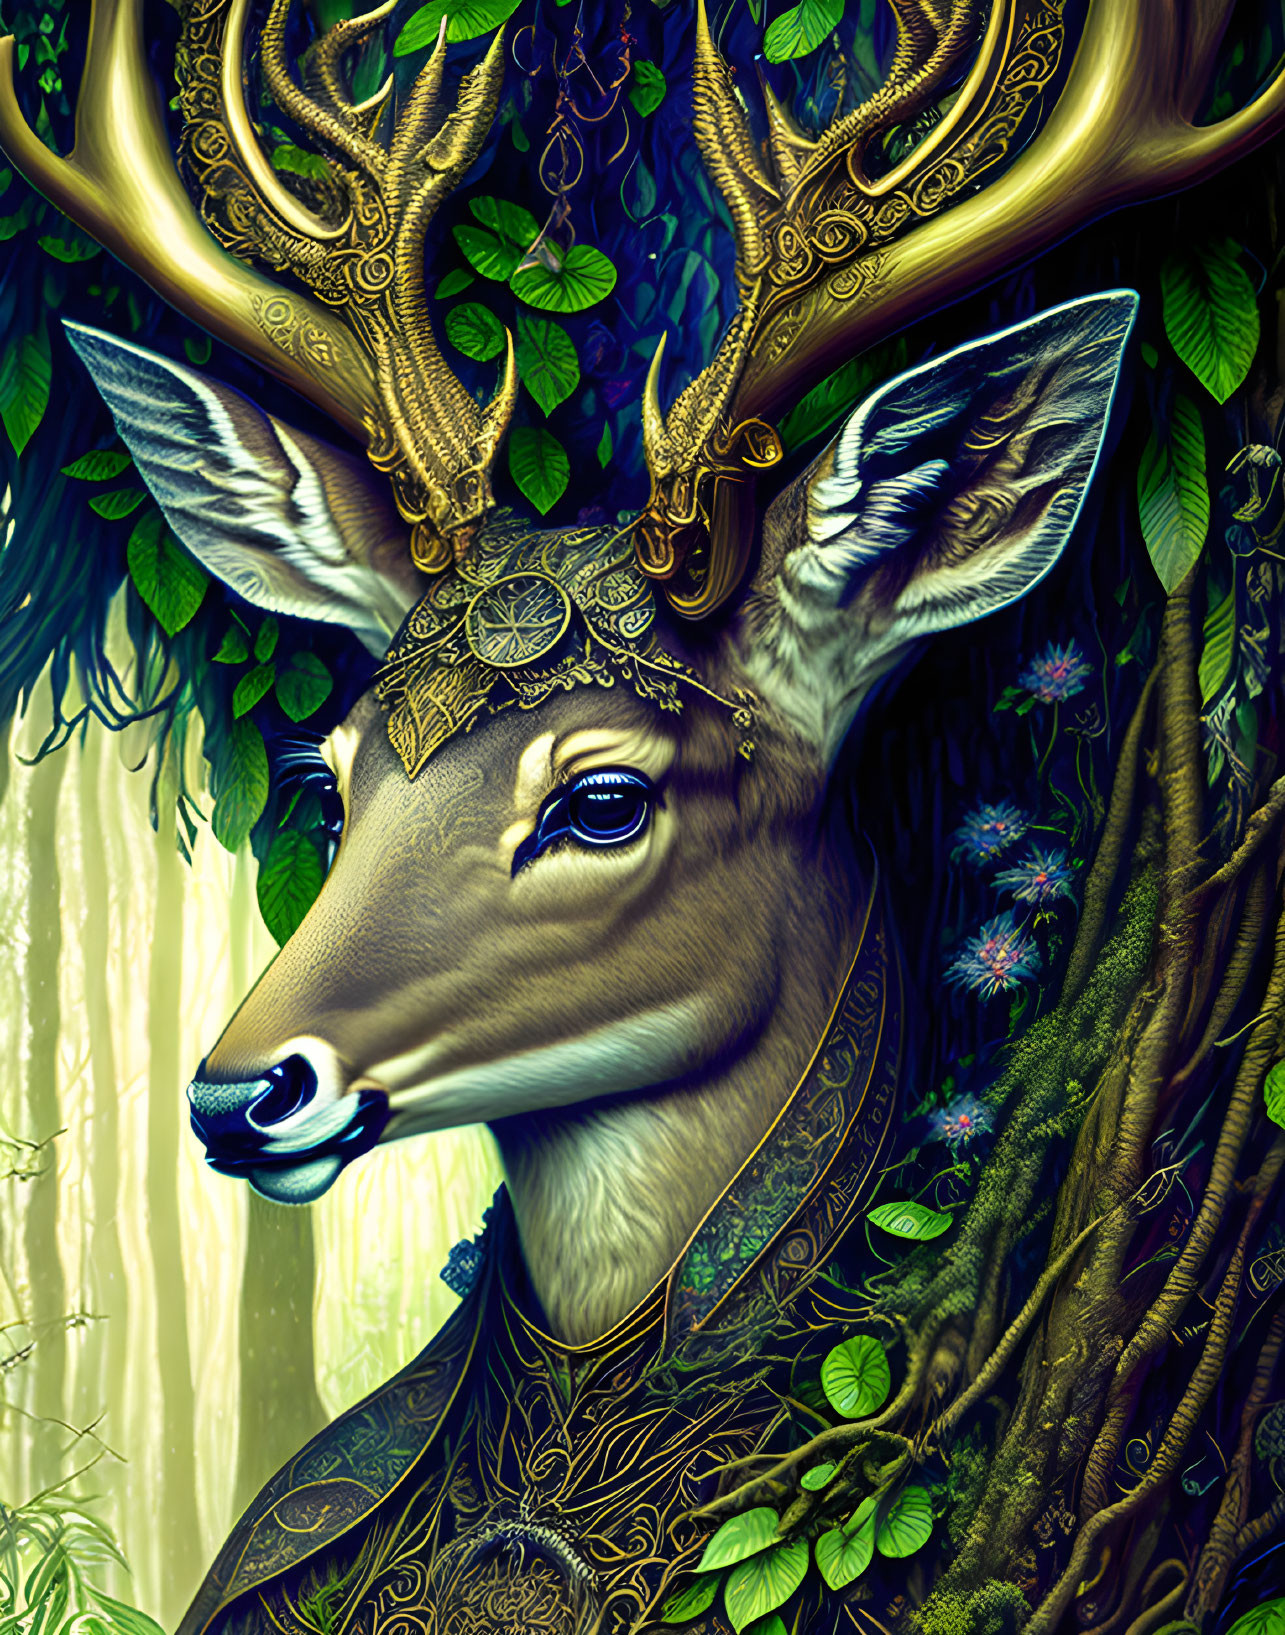 Golden antlered deer digital artwork with ornamental patterns on a green background